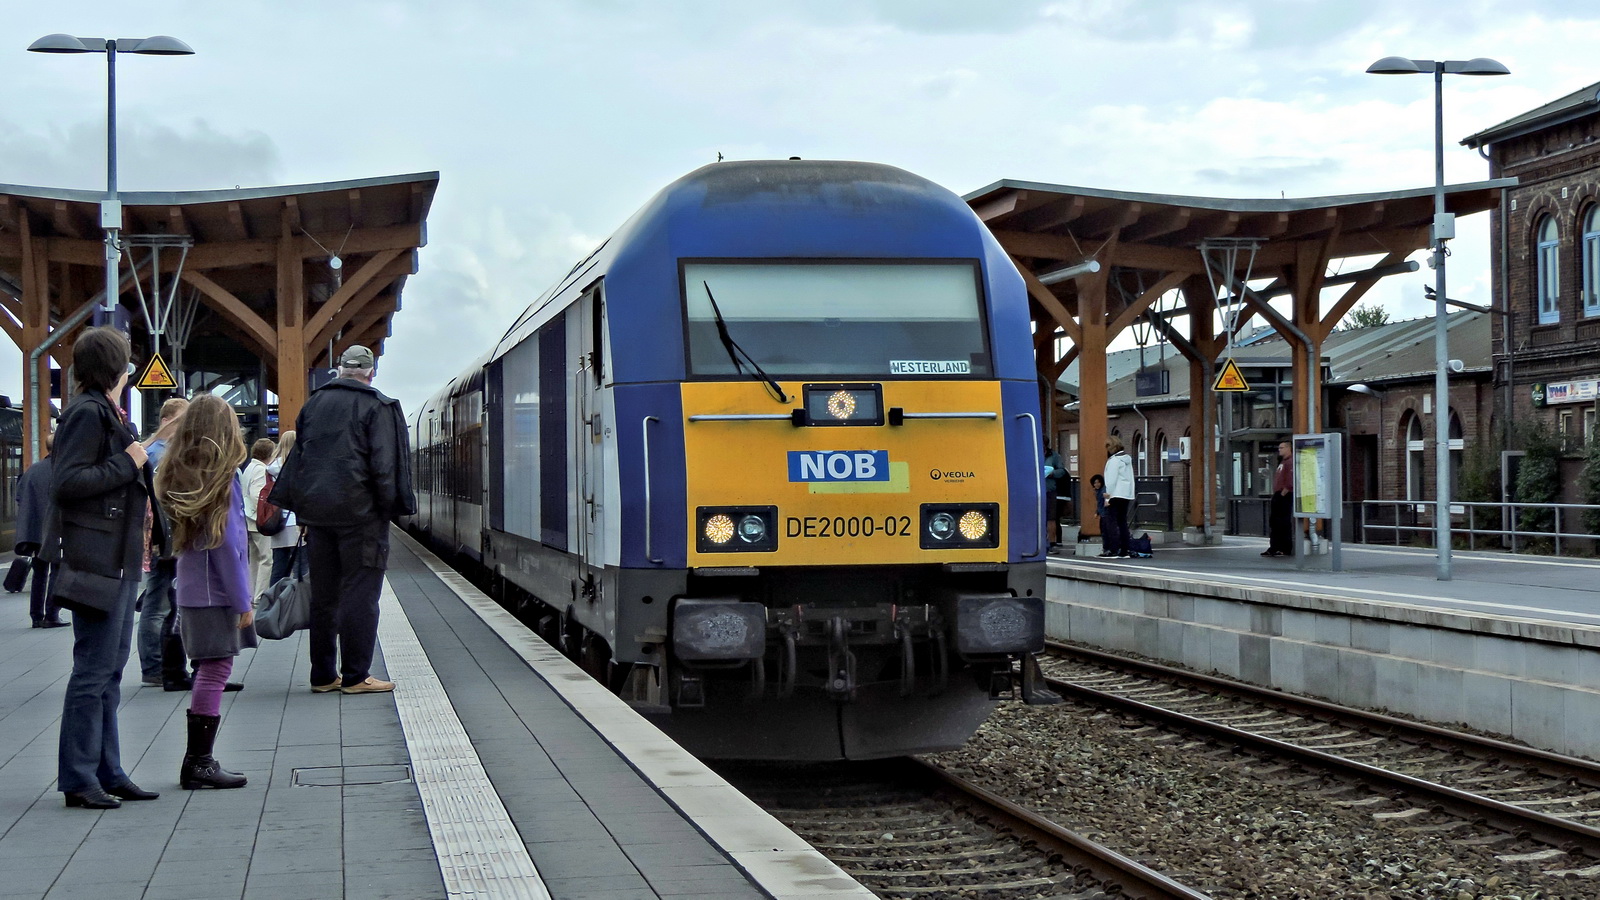 DE 2000-02 in Richtung Westerland